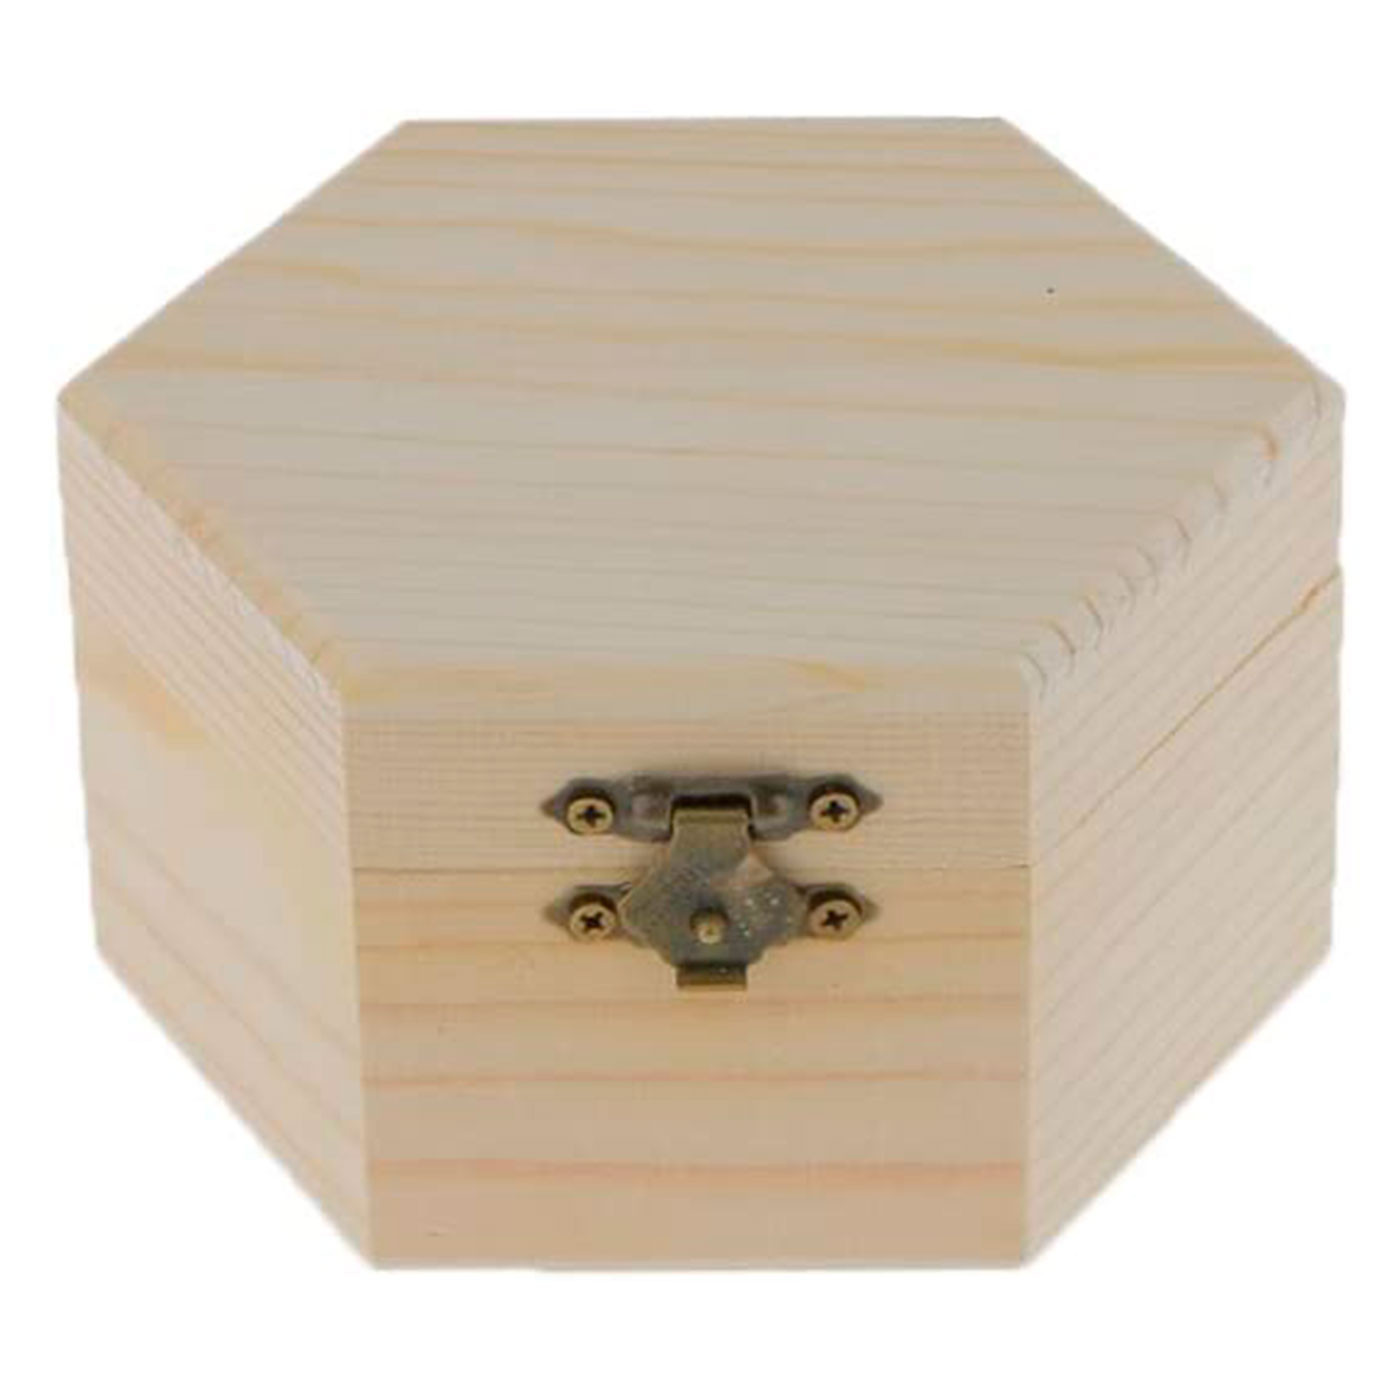 Caja de madera hexagonal...